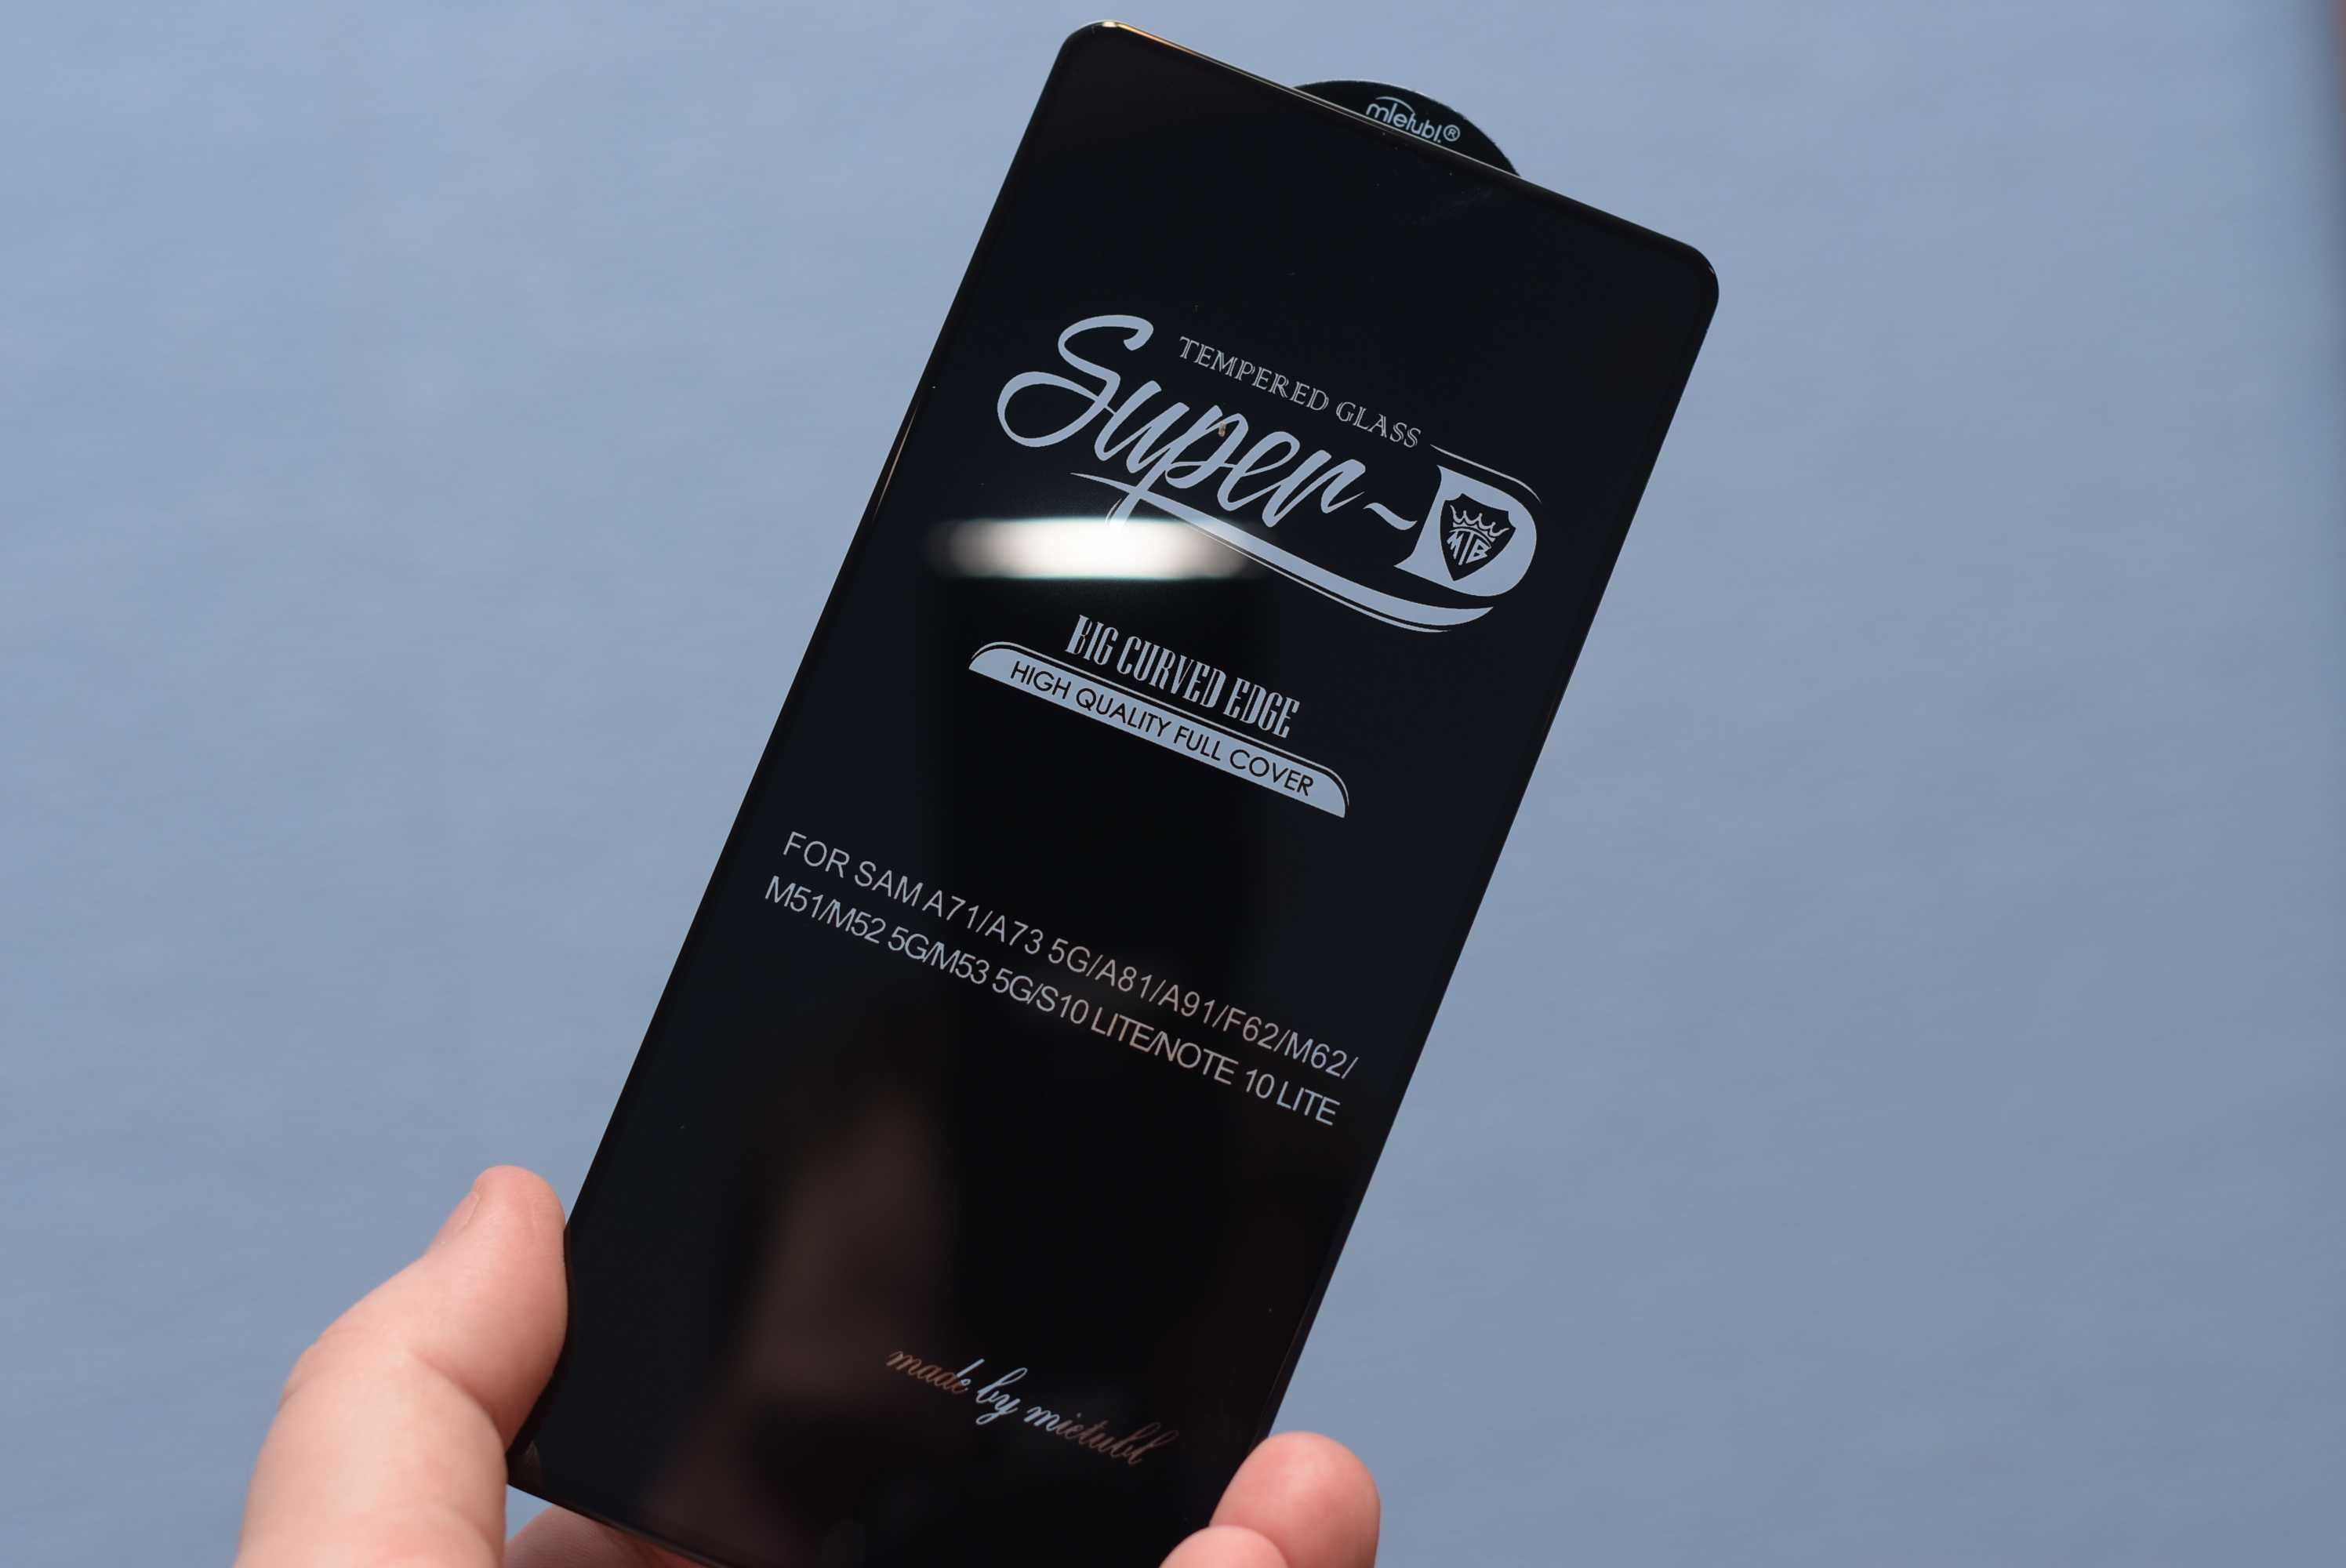 Стекло премиум качества с олеофобкой 0,44мм Samsung Iphone SuperD